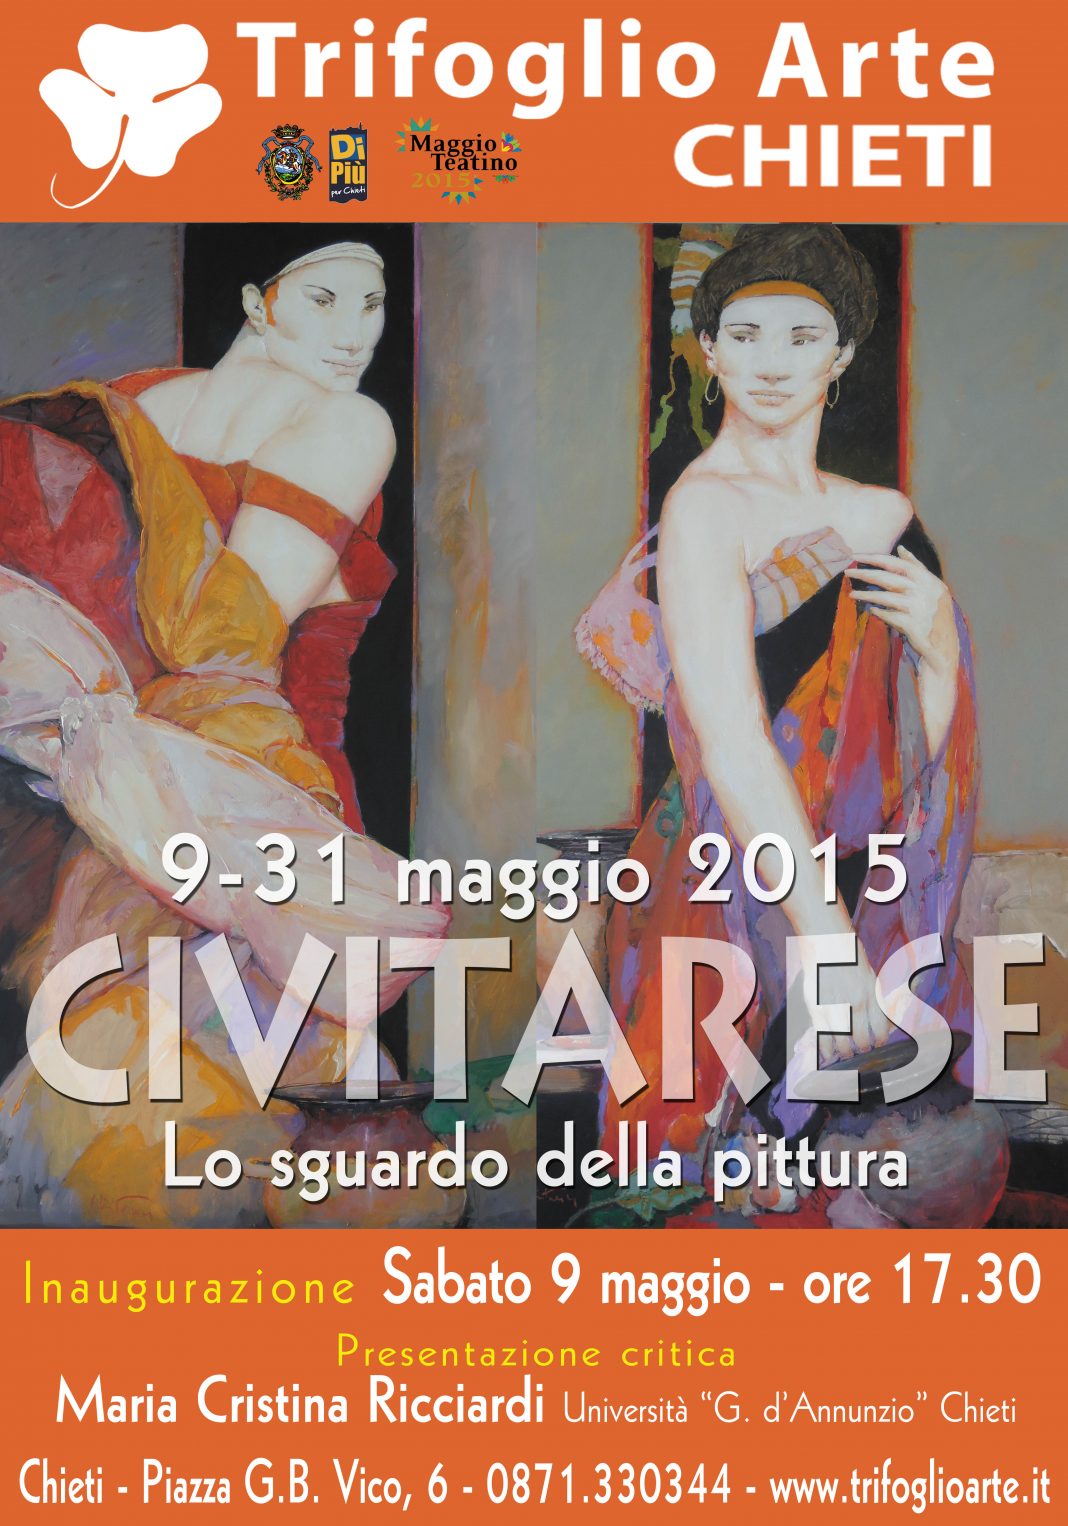 Goffredo Civitarese – Lo sguardo della pitturahttps://www.exibart.com/repository/media/eventi/2015/05/goffredo-civitarese-8211-lo-sguardo-della-pittura-1068x1526.jpg